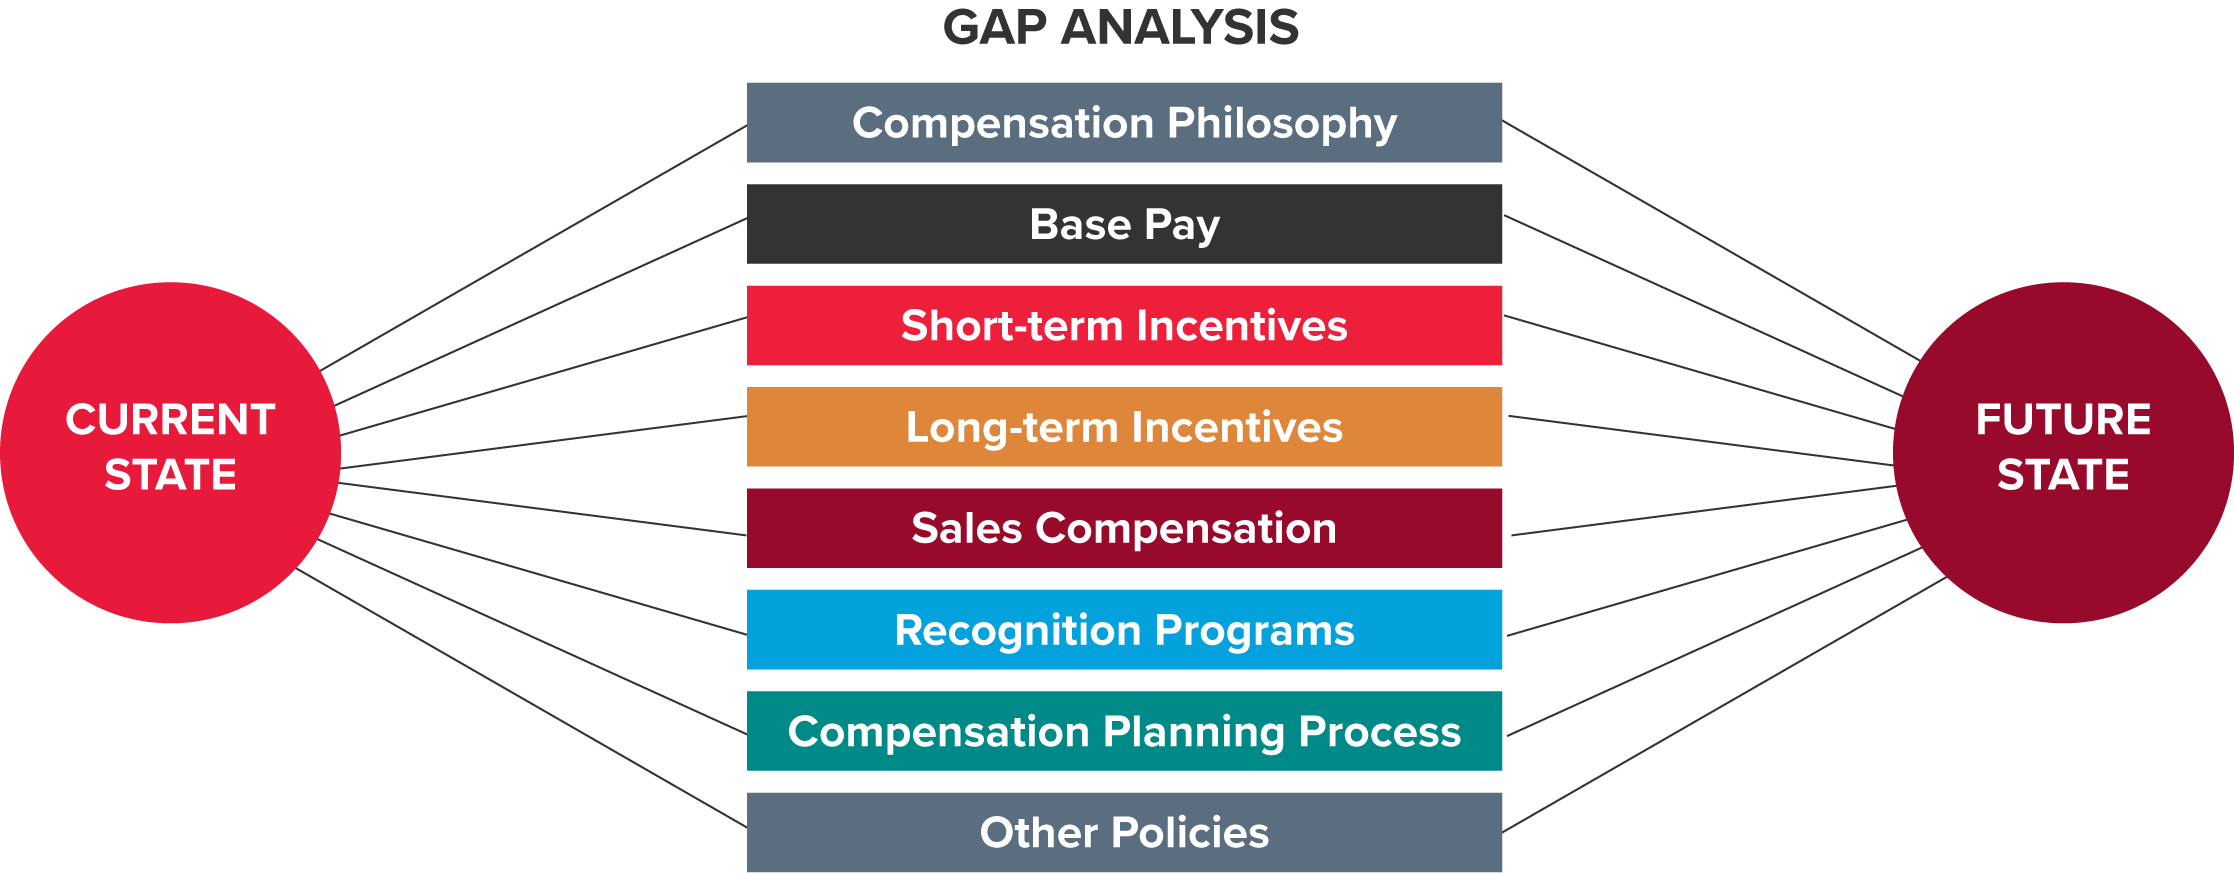 Gap Analysis Chart